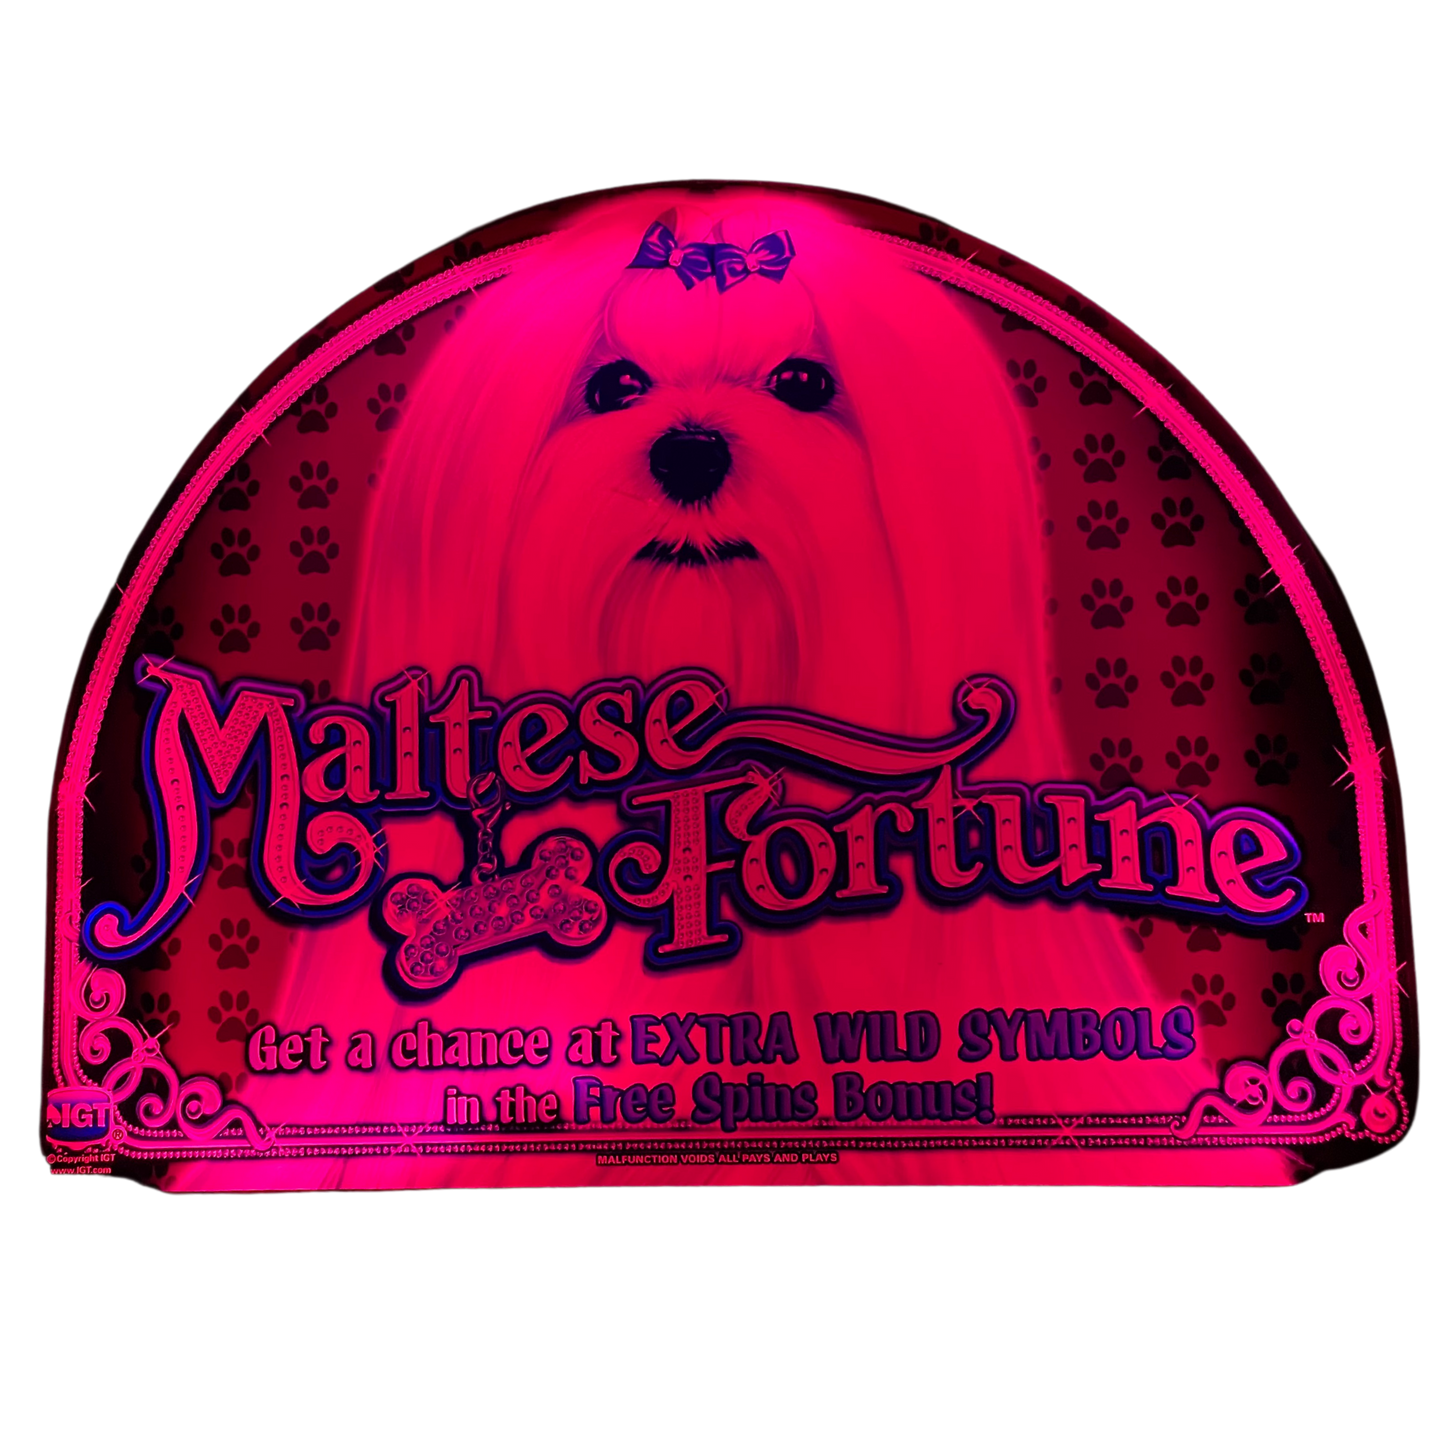 Maltese Fortune Jumbo Slot Glass